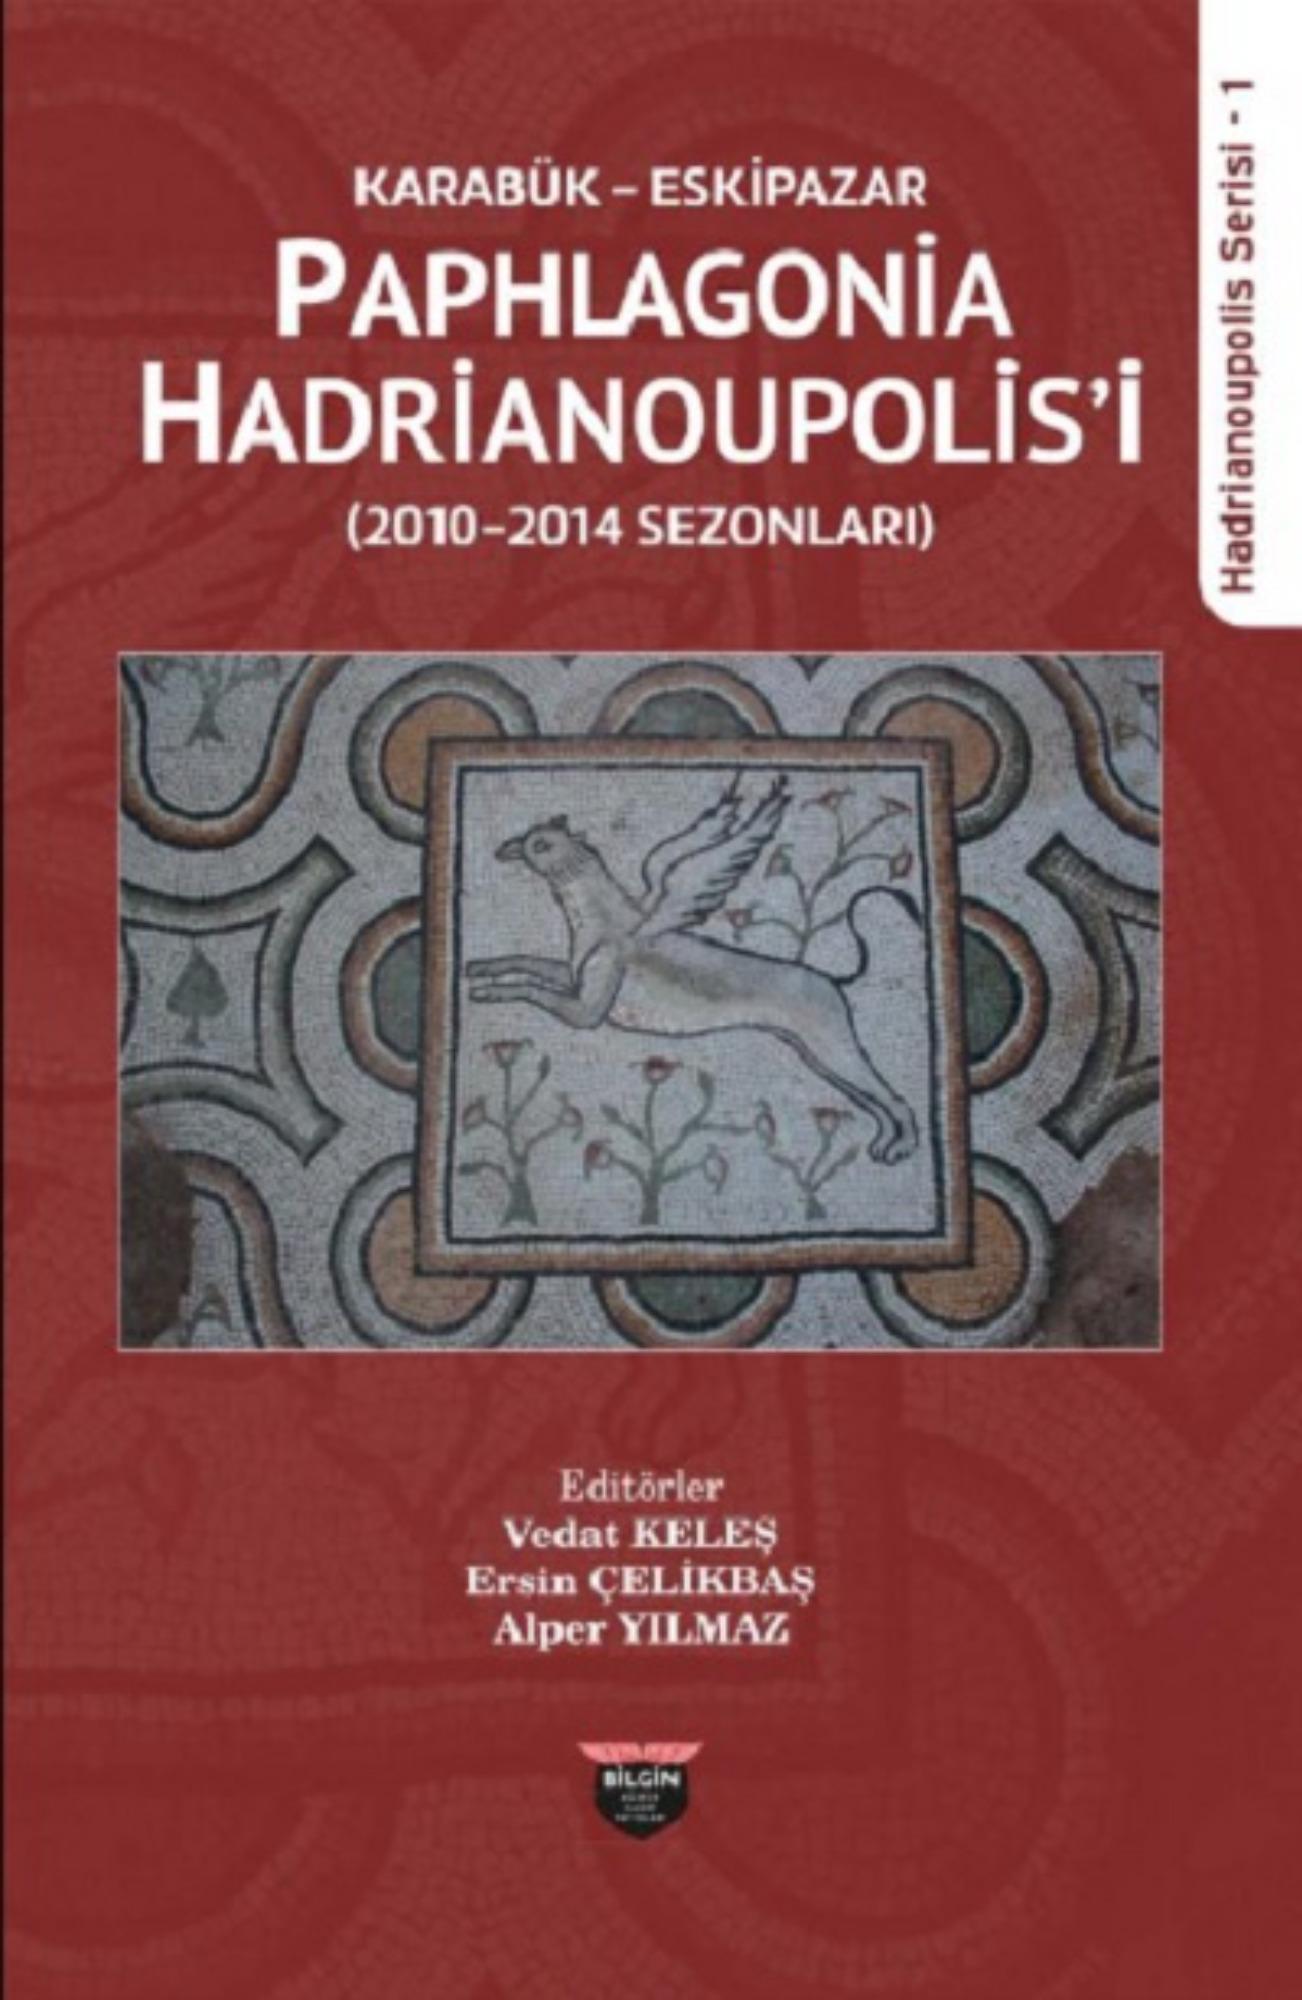 Keleş, Vedat – Ersin Çelikbaş – Alper Yılmaz : Karabük Eskipazar Paphlagonia Hadrianoupolis'i (2010-2014 Sezonları)